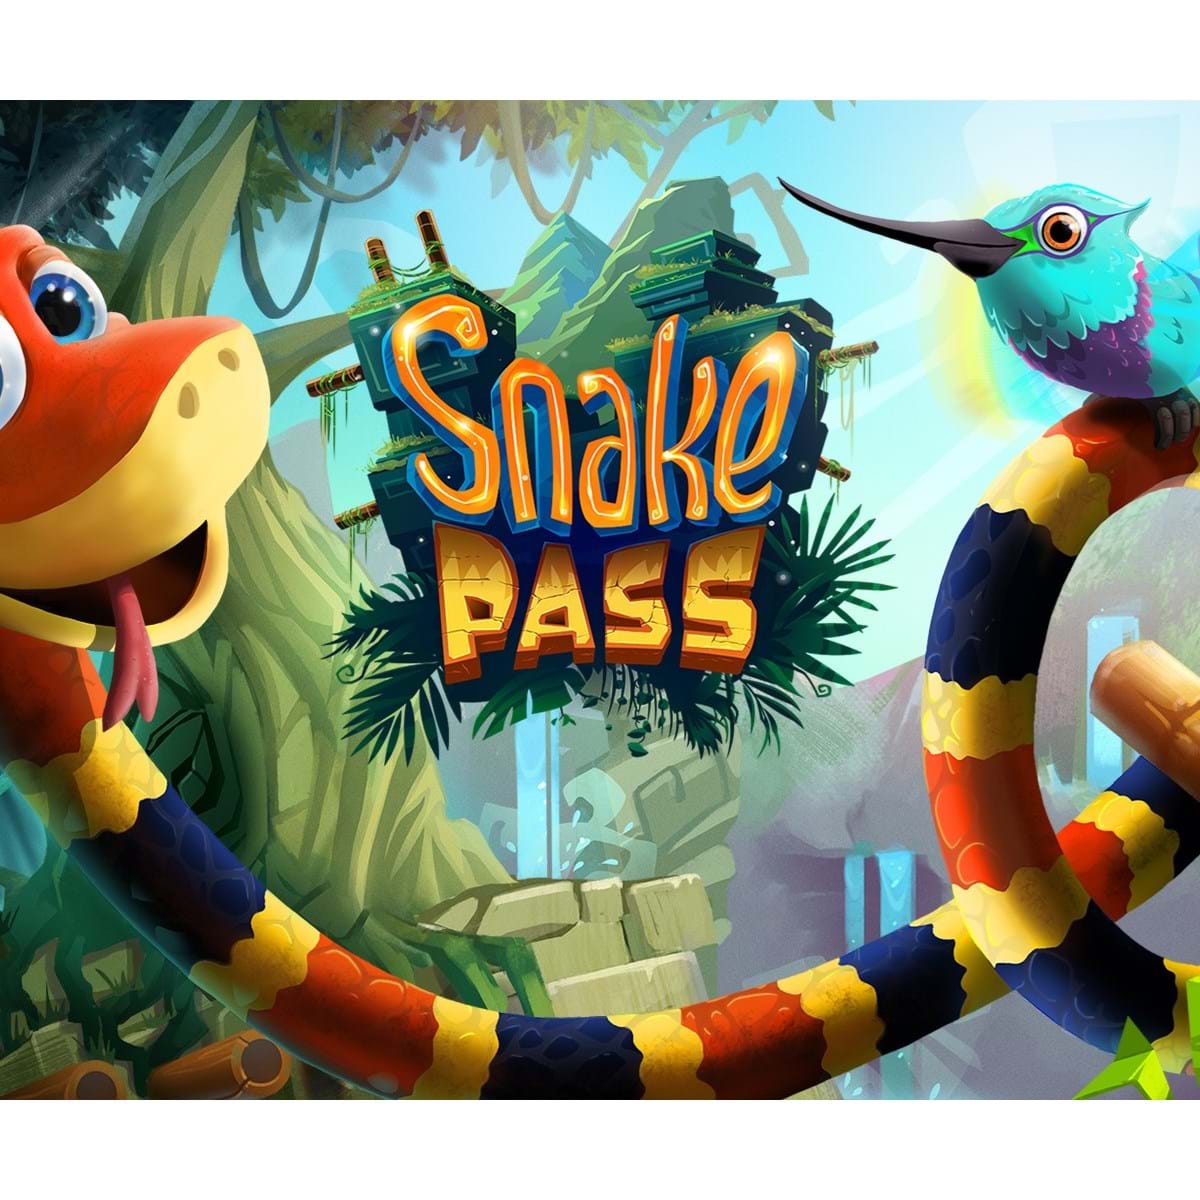 Snake Pass gratuito na Humble Bundle - Record Gaming - Jornal Record